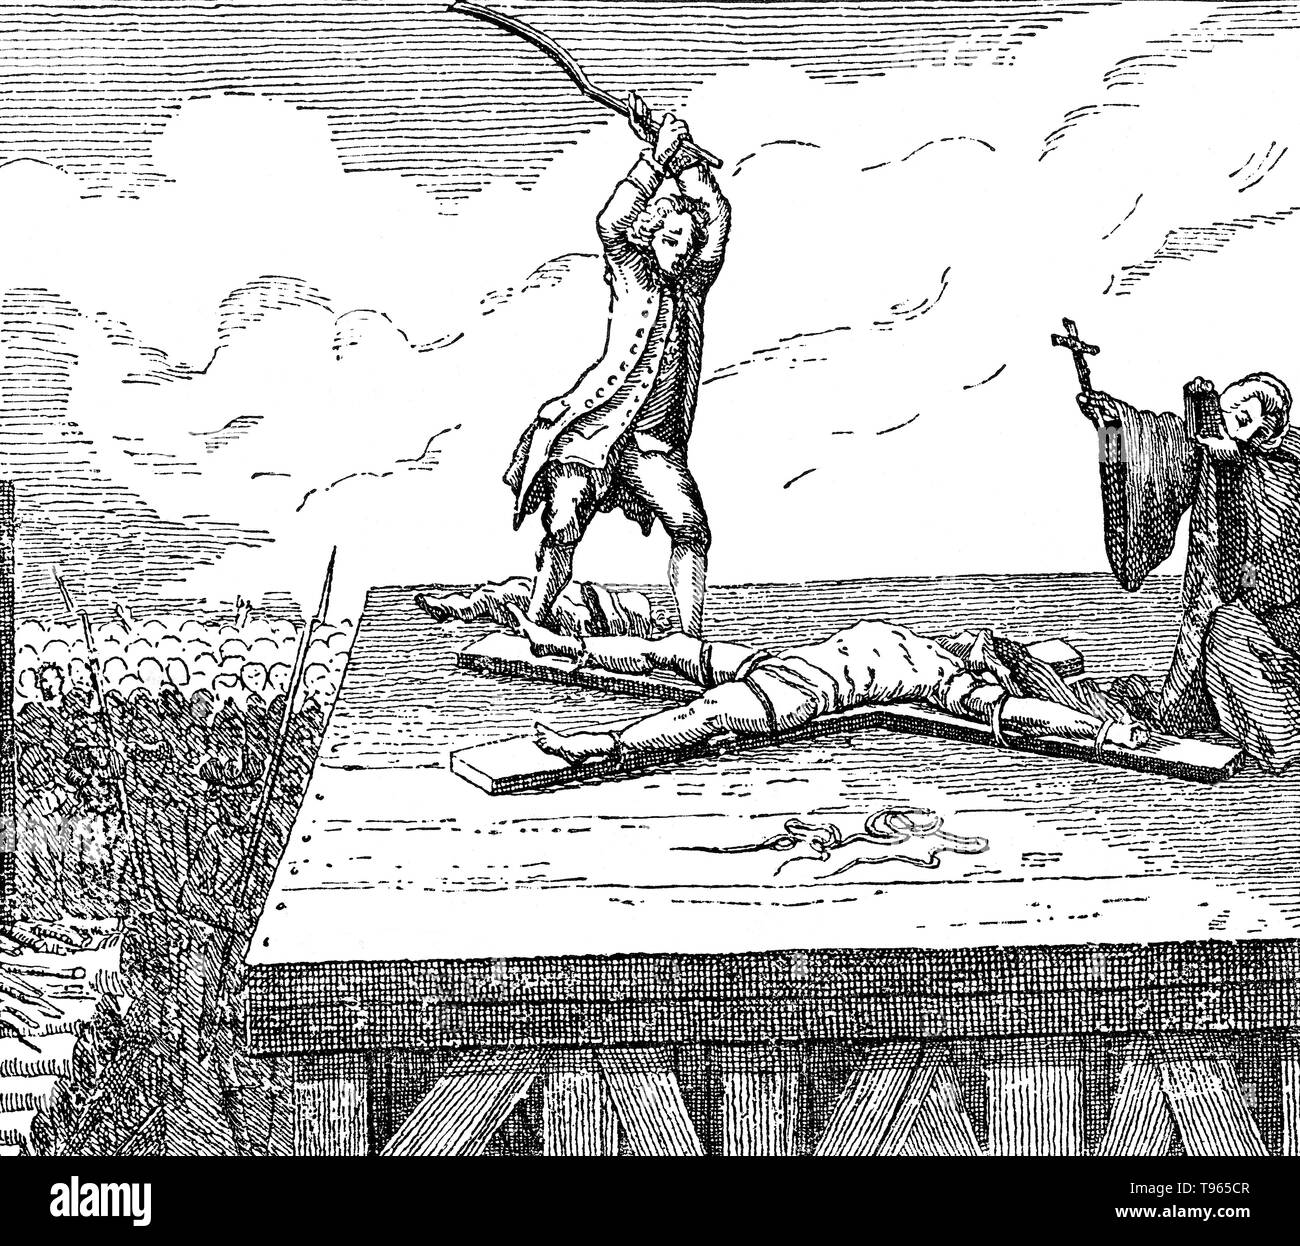 La roue, également connu sous le nom de Catherine wheel ou simplement la roue, la torture était un dispositif utilisé pour la peine de mort de l'antiquité jusqu'au début de l'époque moderne pour l'exécution publique en brisant l'os du criminel/avoir frappé à mort. Antoine François Desrues (1744 - 1777) était un empoisonneur français. Il se rendit à Paris pour chercher fortune, et a commencé dans les affaires comme un épicier. Il était connu comme un homme de grande piété et de dévotion, et son entreprise était réputée pour être une cité florissante. Banque D'Images